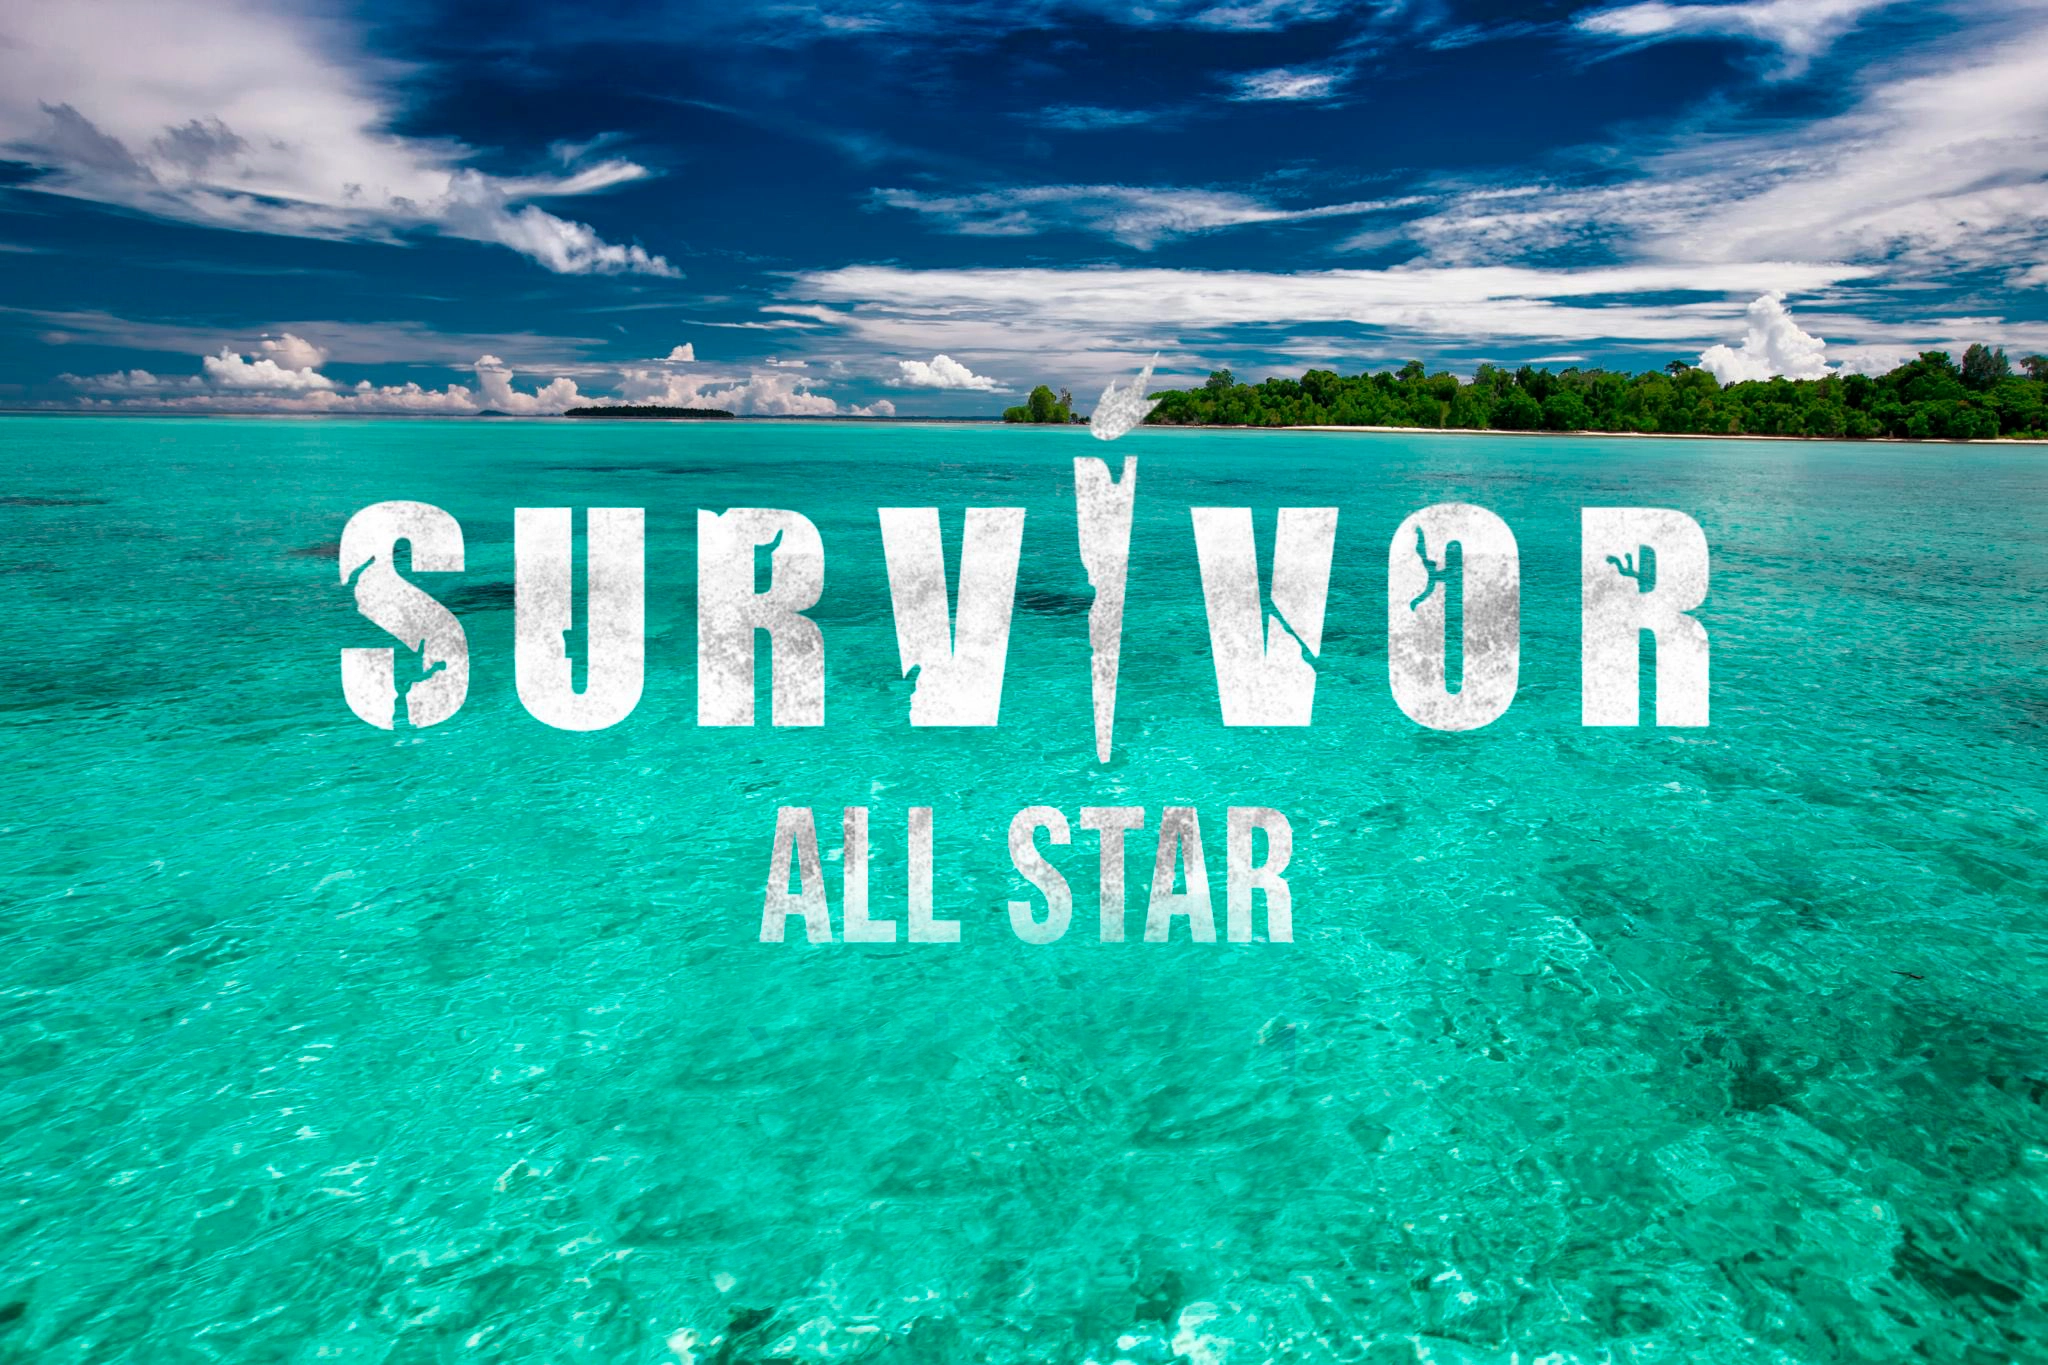 Survivor dokunulmazlık oyununu kim kazandı? 6 Şubat Survivor All Star'da dokunulmazlık oyununu kazanan hangi takım oldu?